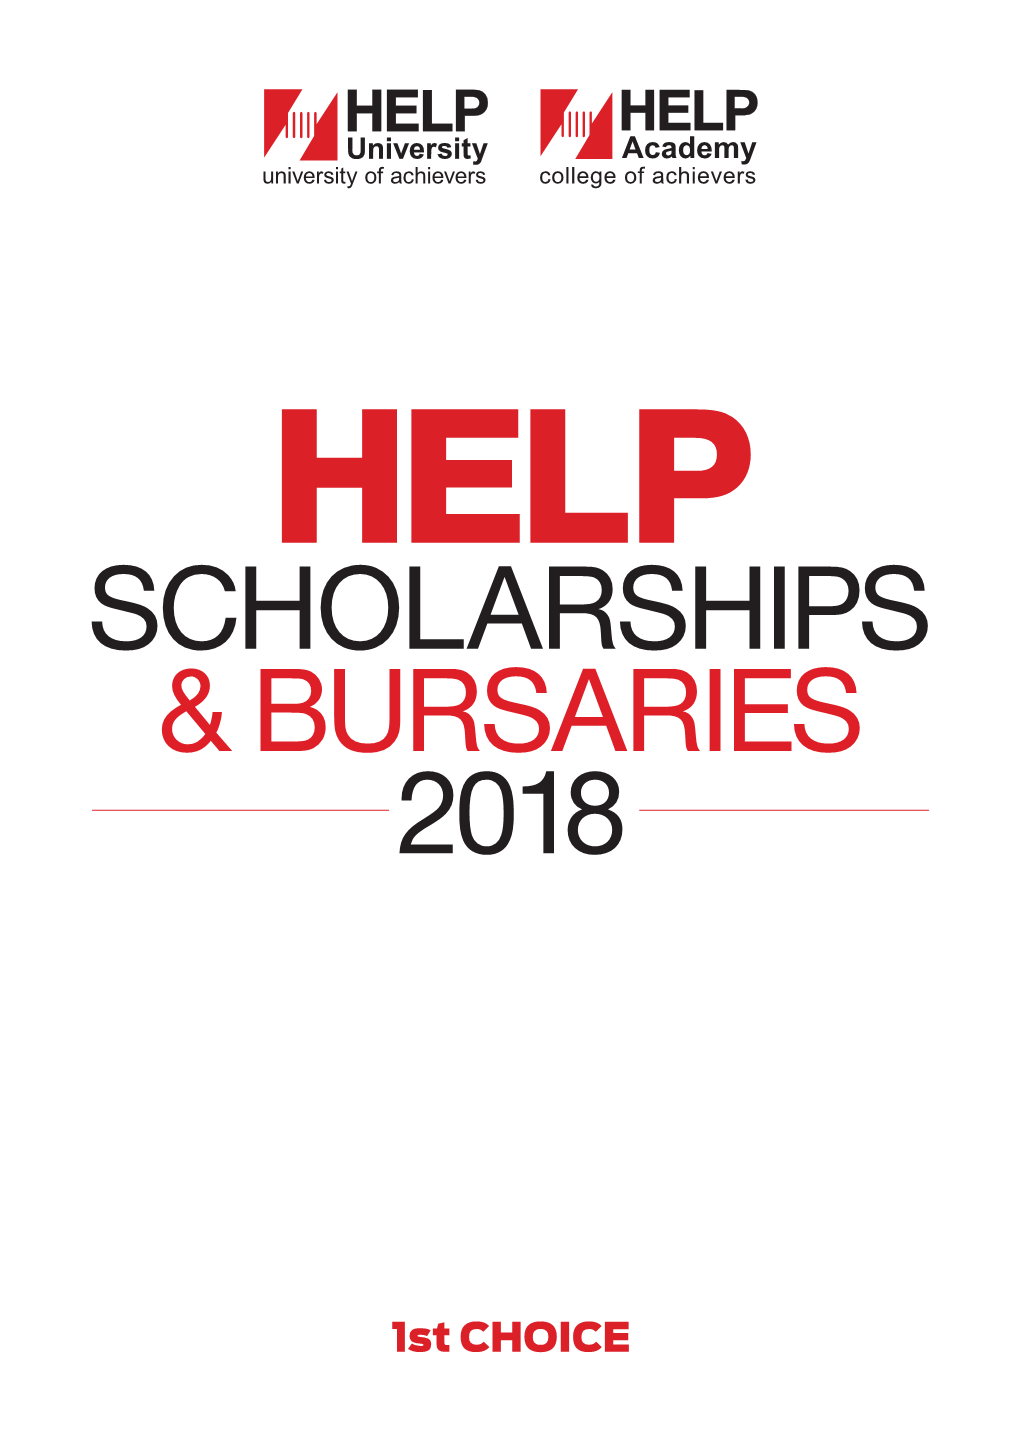 Help Scholarships & Bursaries 2018 Contents